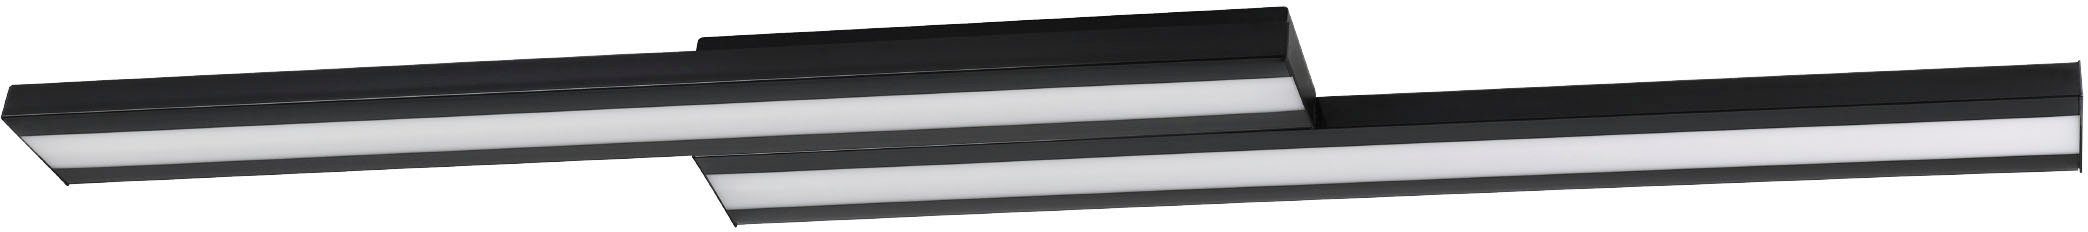 EGLO Deckenleuchte SALITERAS-Z, LED fest integriert, warmweiß - kaltweiß, Deckenleuchte in schwarz aus Stahl - 10,2W - warmweiß - kaltweiß | Deckenlampen